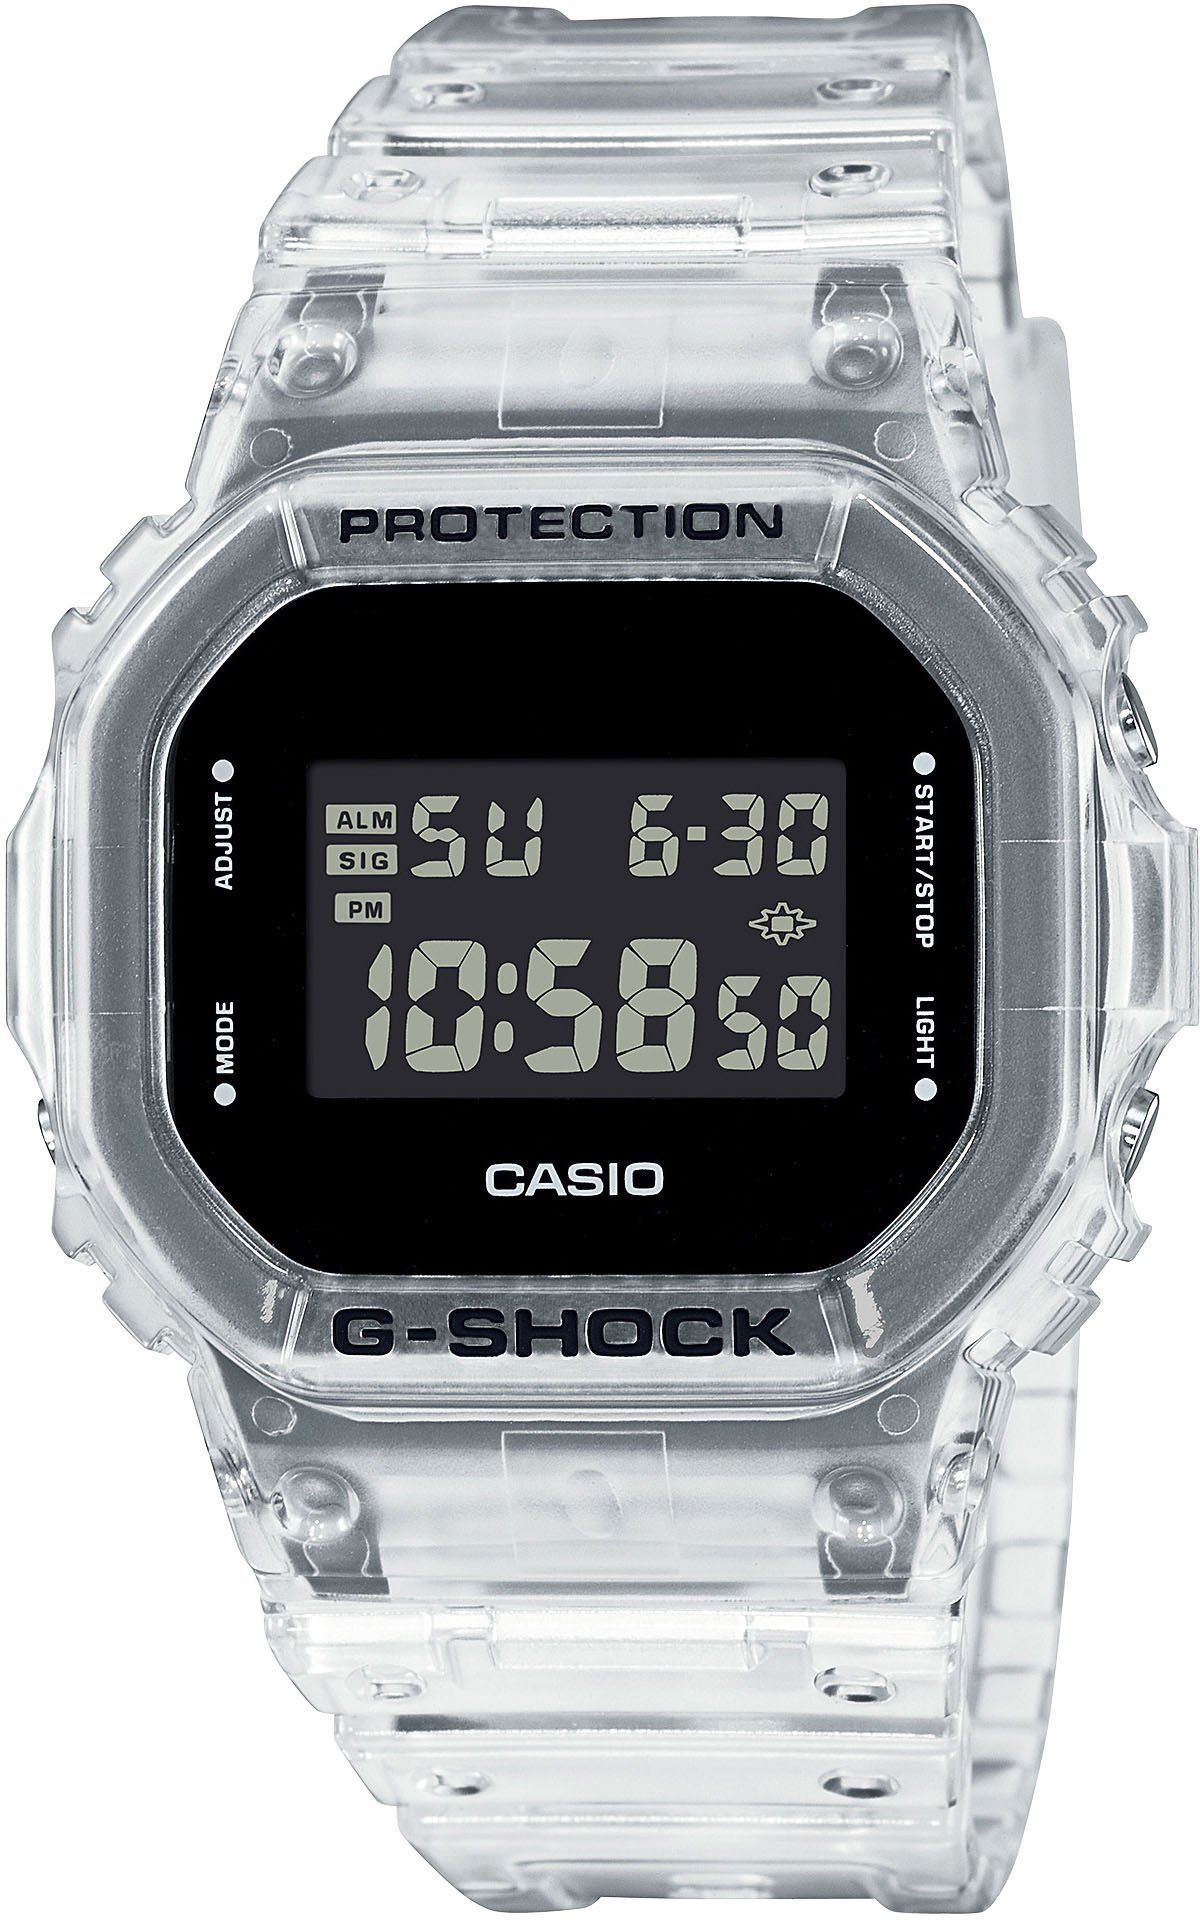 G-SHOCK CASIO DW-5600SKE-7ER Chronograph